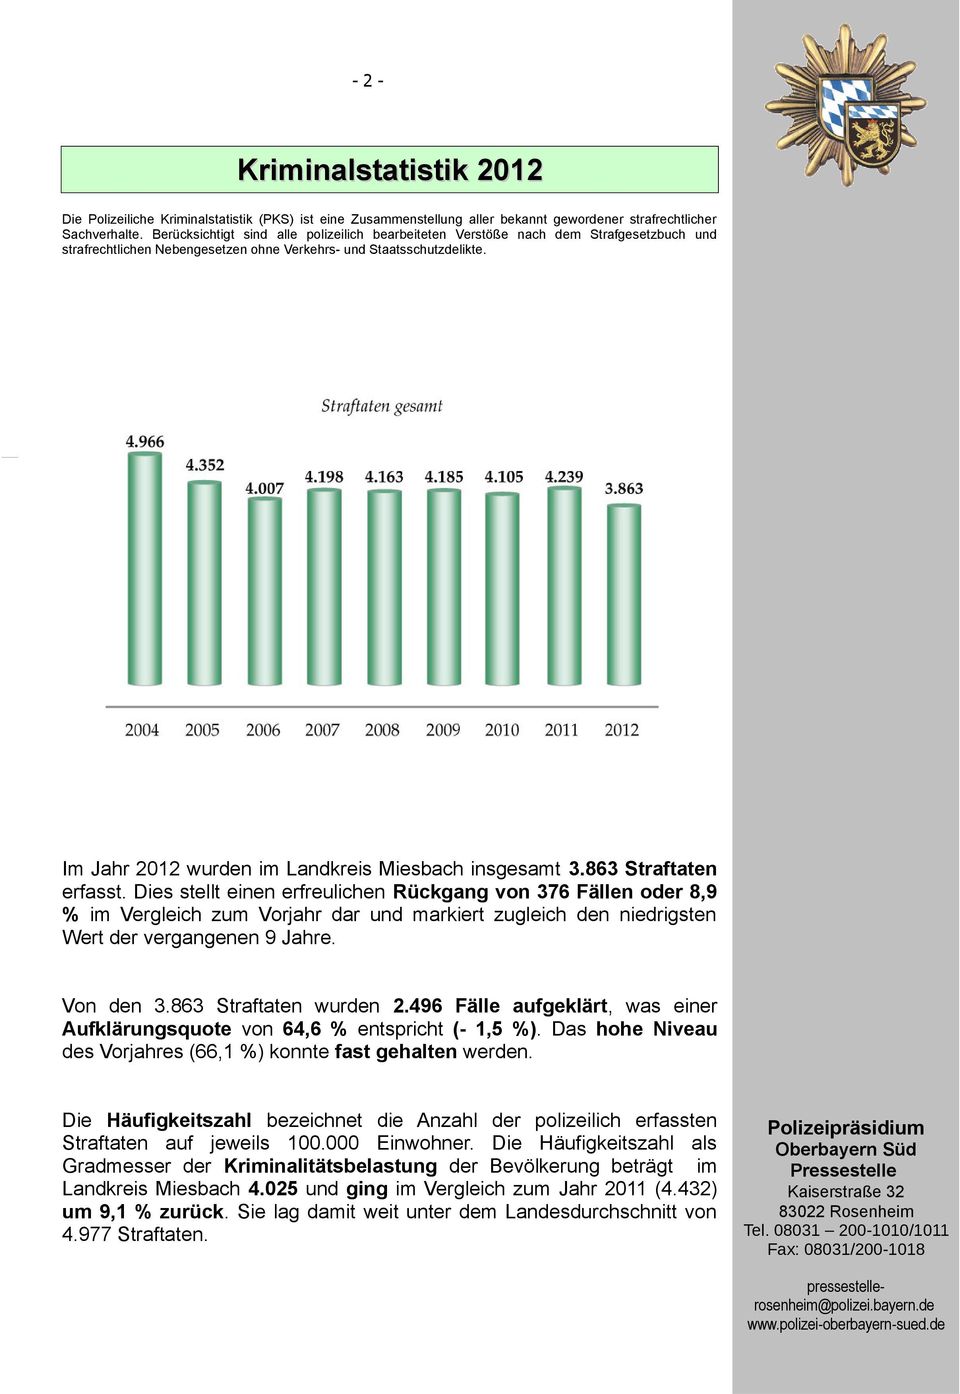 Im Jahr 2012 wurden im Landkreis Miesbach insgesamt 3.863 Straftaten erfasst.